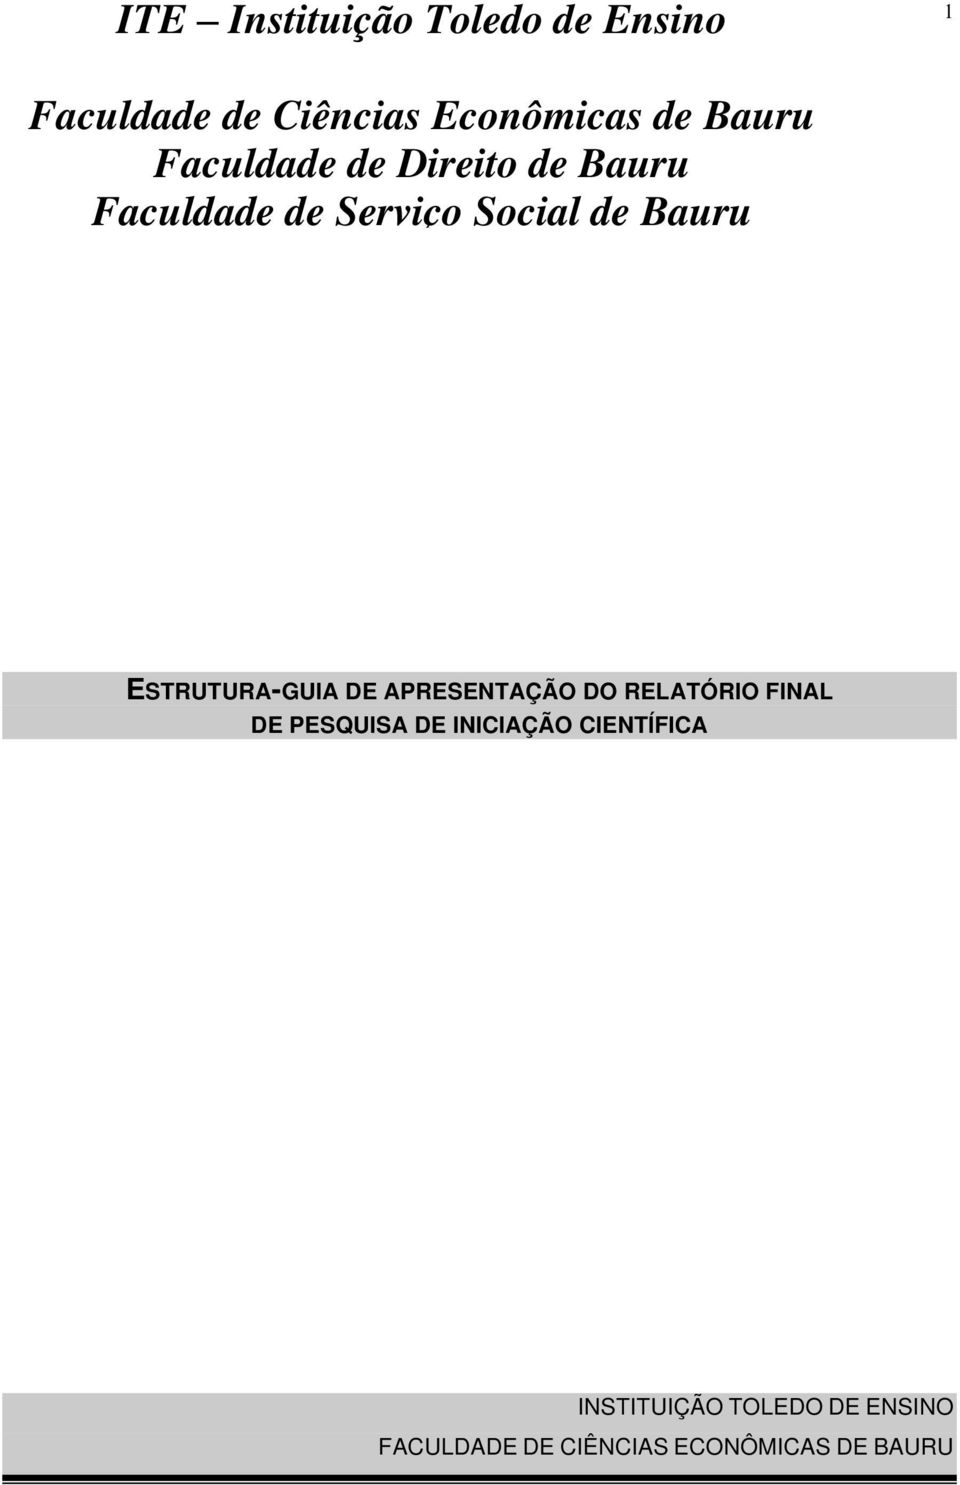 ESTRUTURA-GUIA DE APRESENTAÇÃO DO RELATÓRIO FINAL DE PESQUISA DE INICIAÇÃO